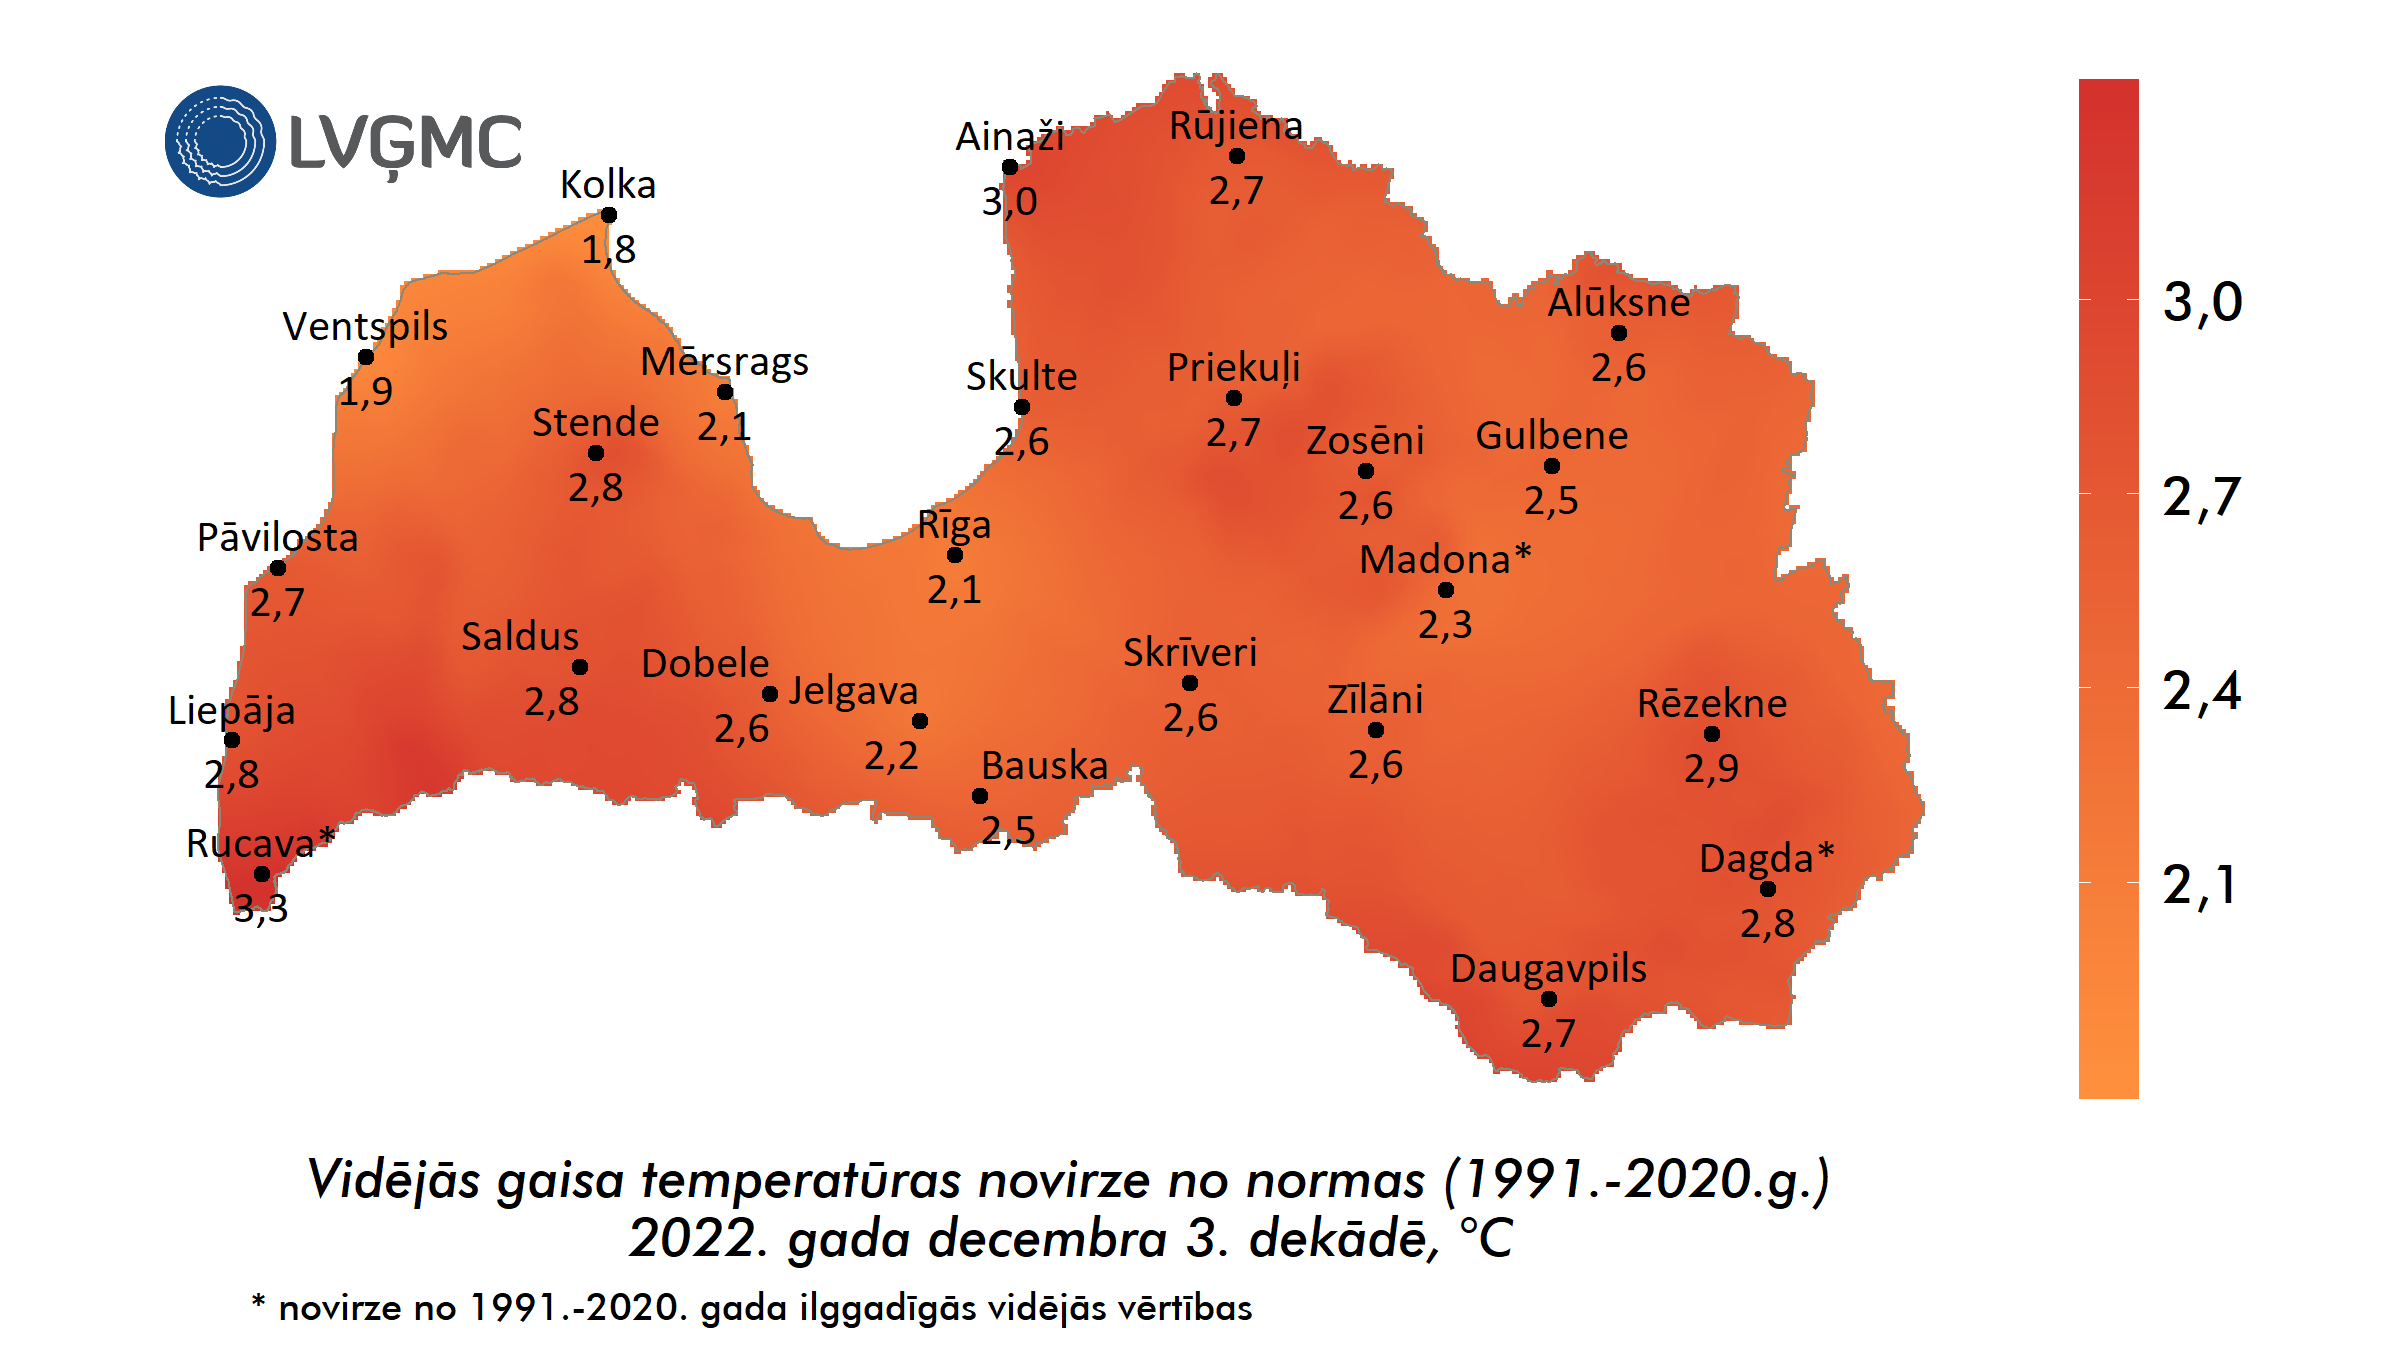 Vidējās gaisa temperatūras novirze no normas 2022. gada decembra 3. dekādē, °C 